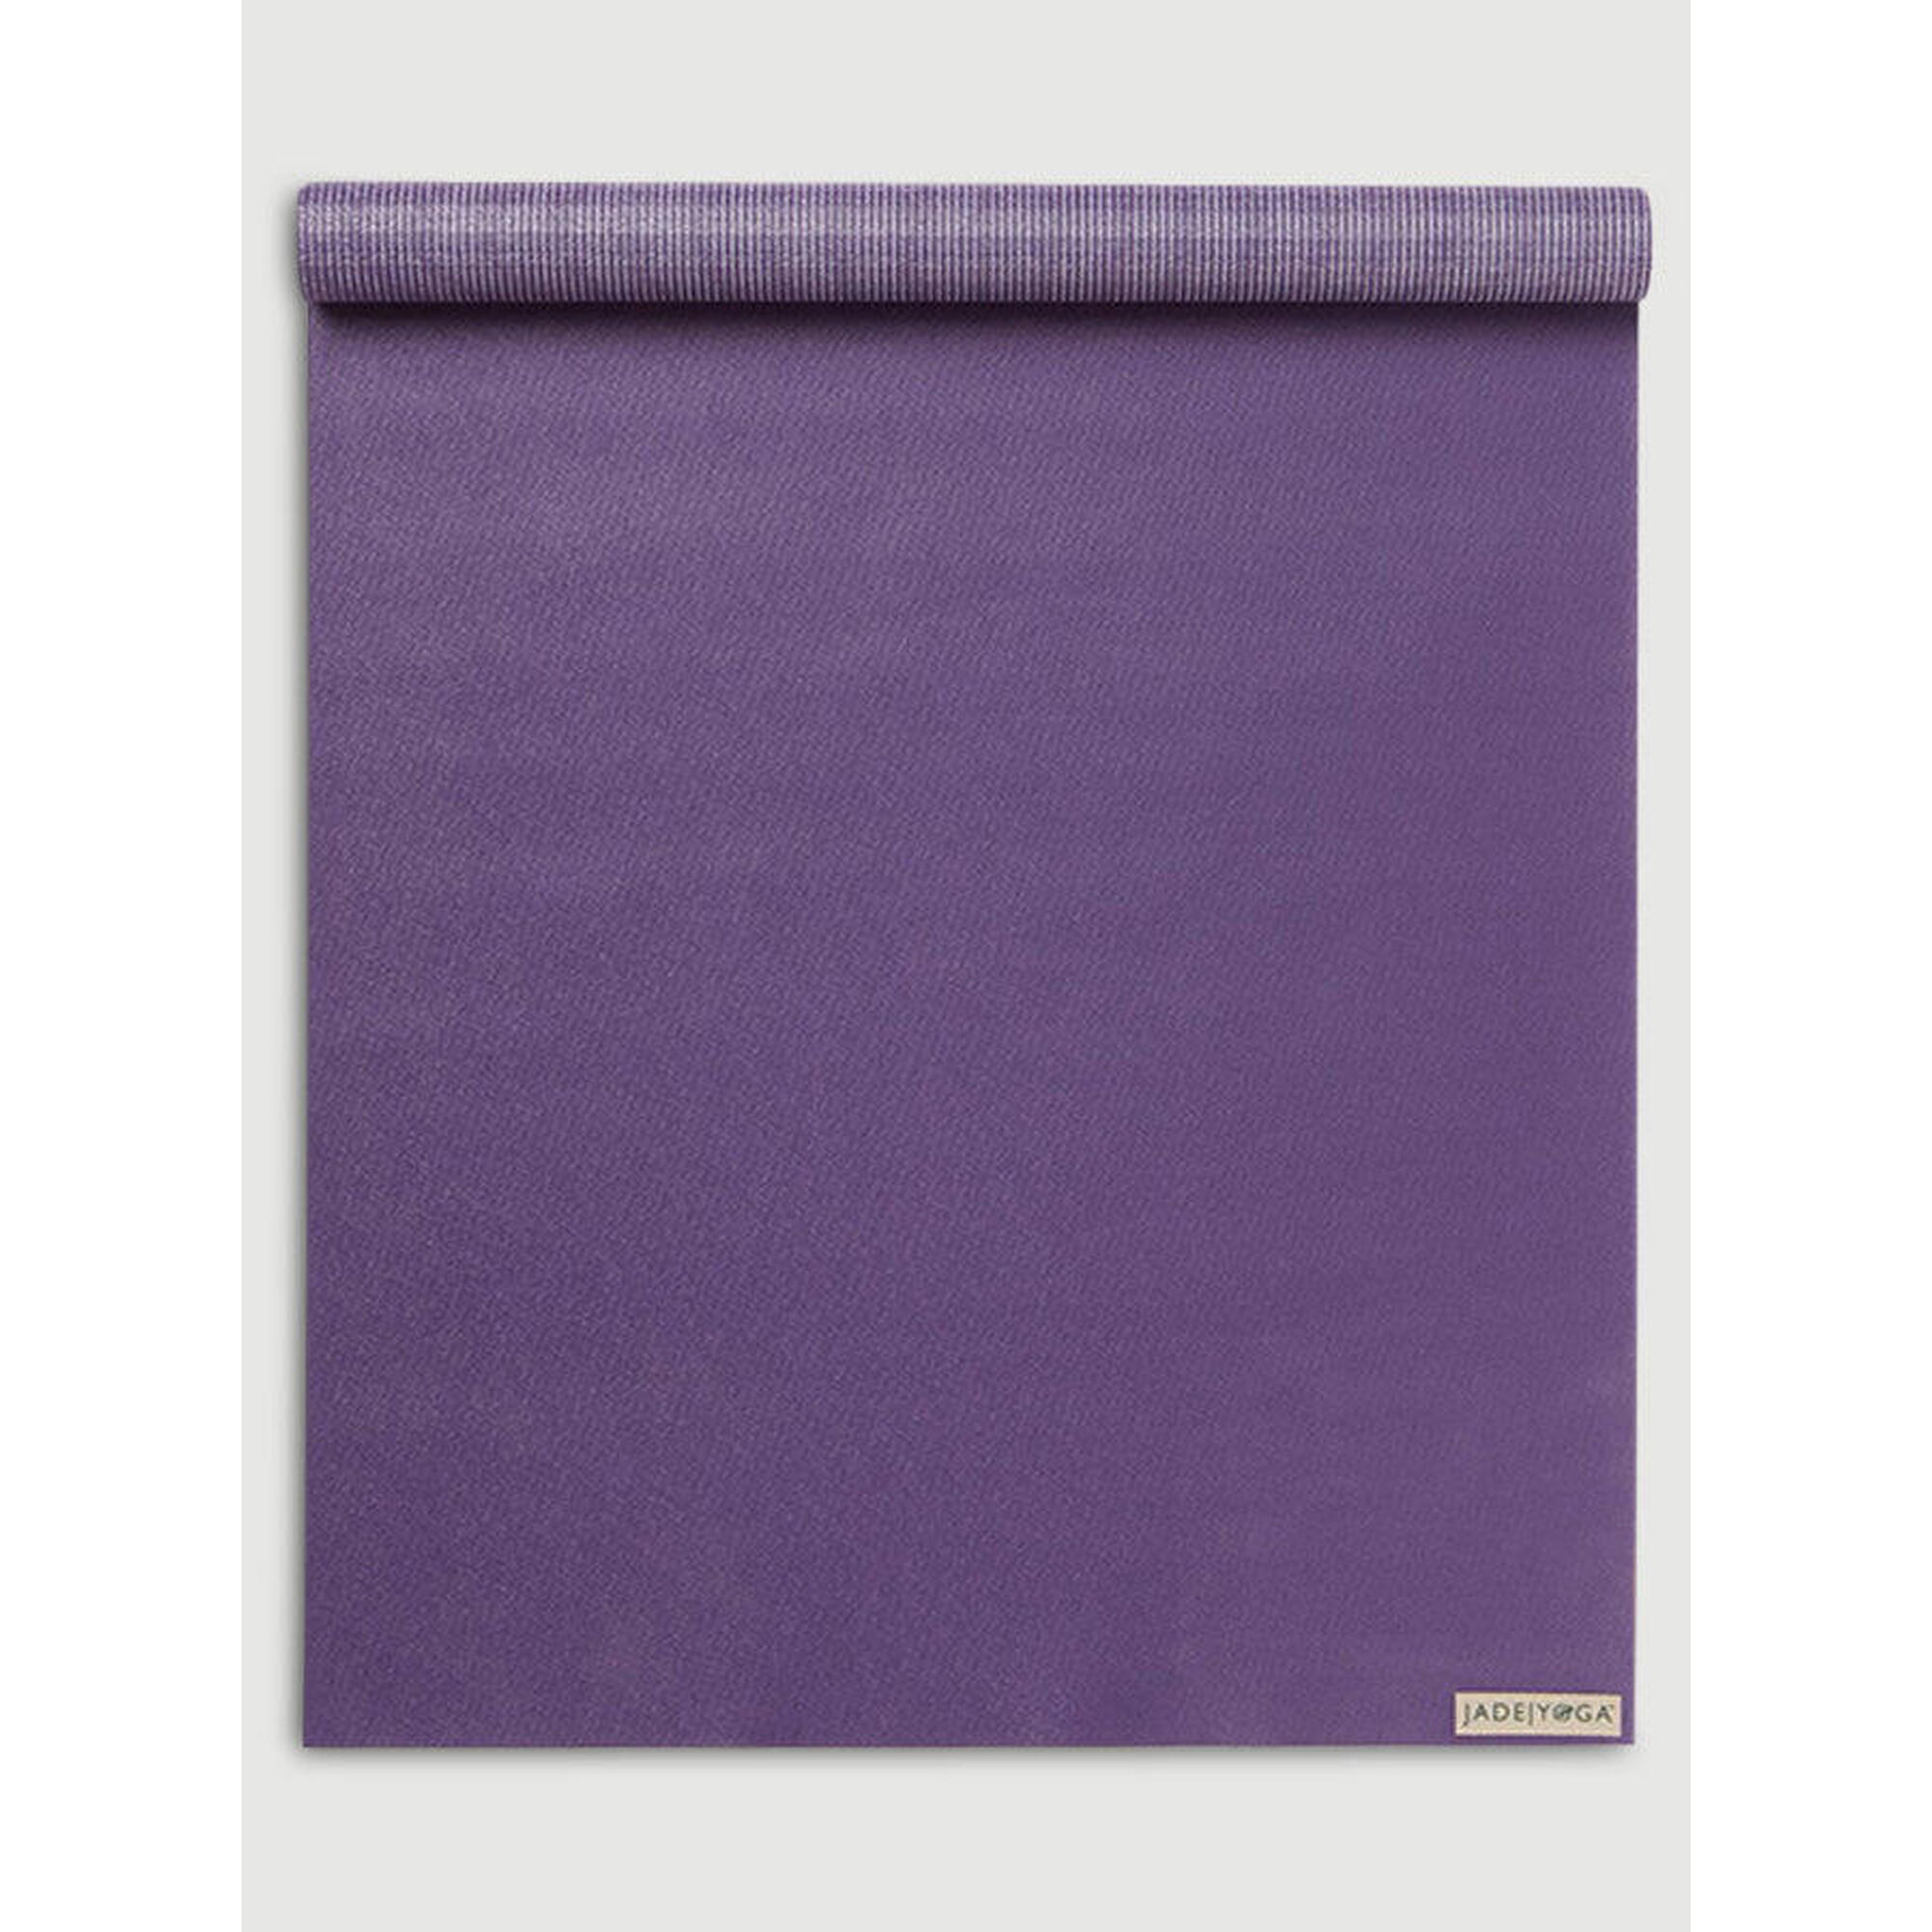 JADE YOGA Jade Yoga Voyager Yoga Mat 1.6mm - Purple